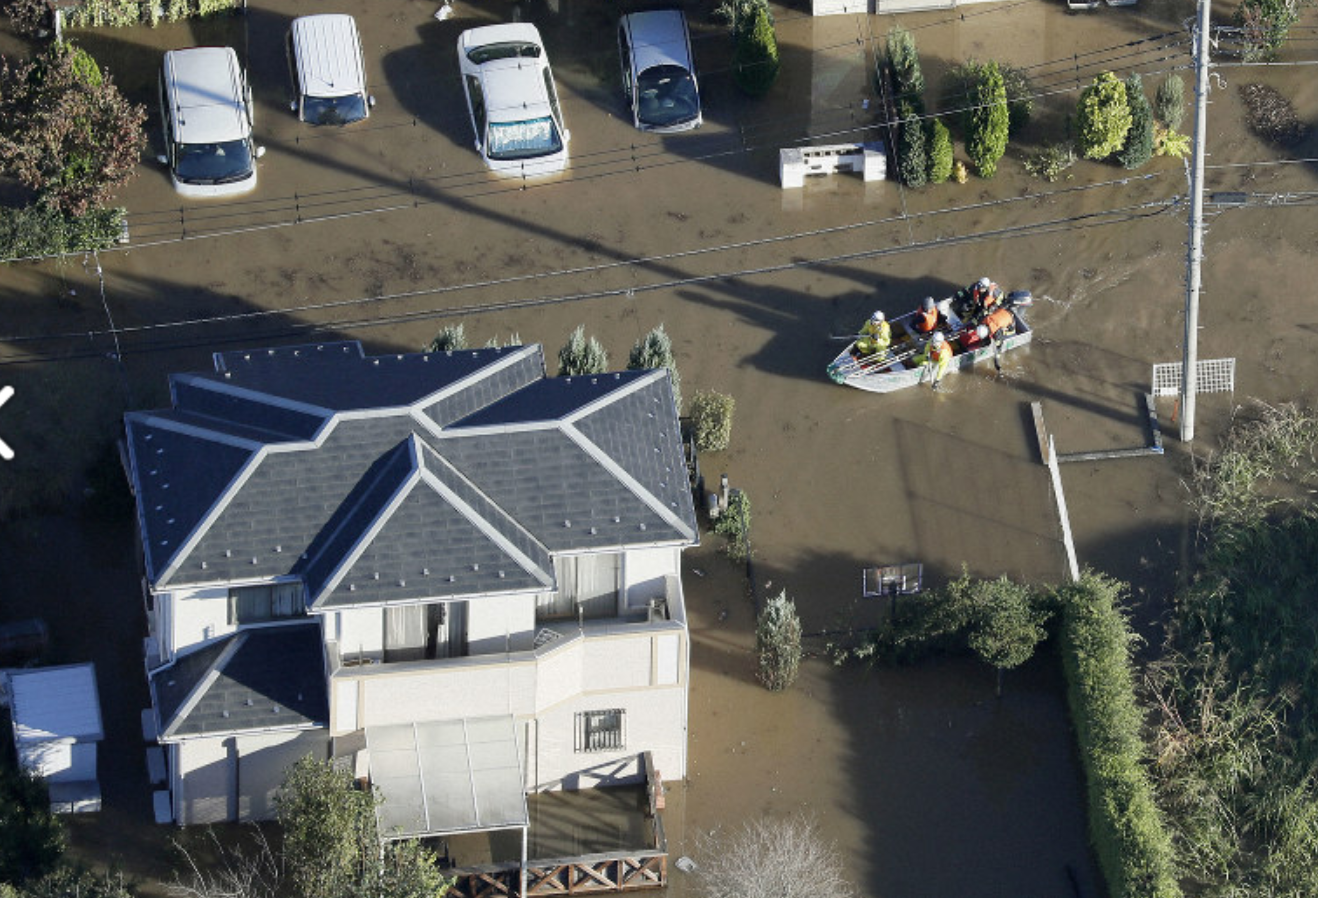 Thuyền cứu hộ tiếp cận một khu dân cư ngập trong nước ở Sakado, tỉnh Saitama, đông bắc Nhật Bản, ngày 13.10. Ảnh: Kyodo